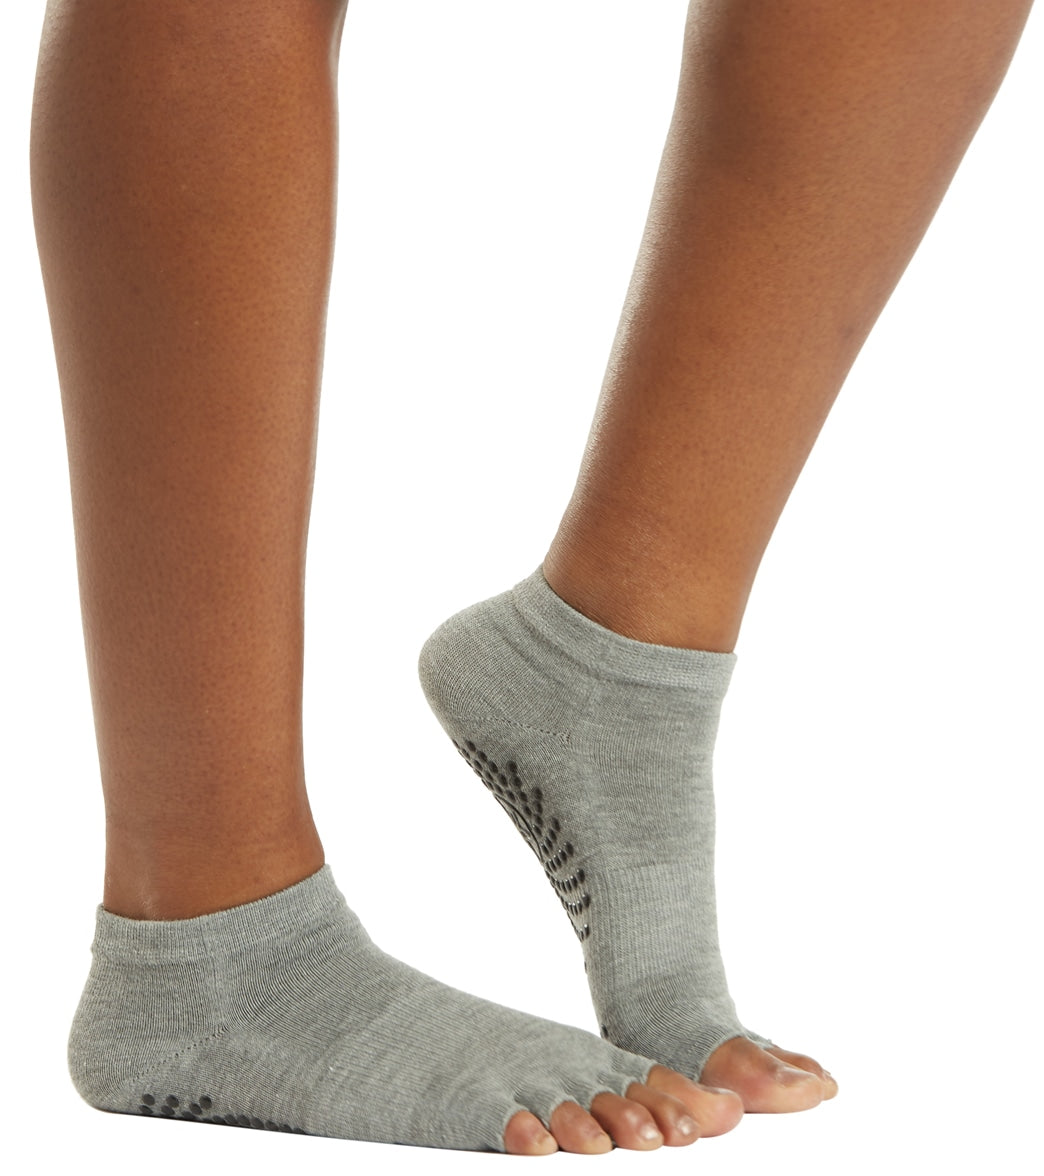 Gaiam All Grip Yoga Socks - Medium/Large - Black/Grey